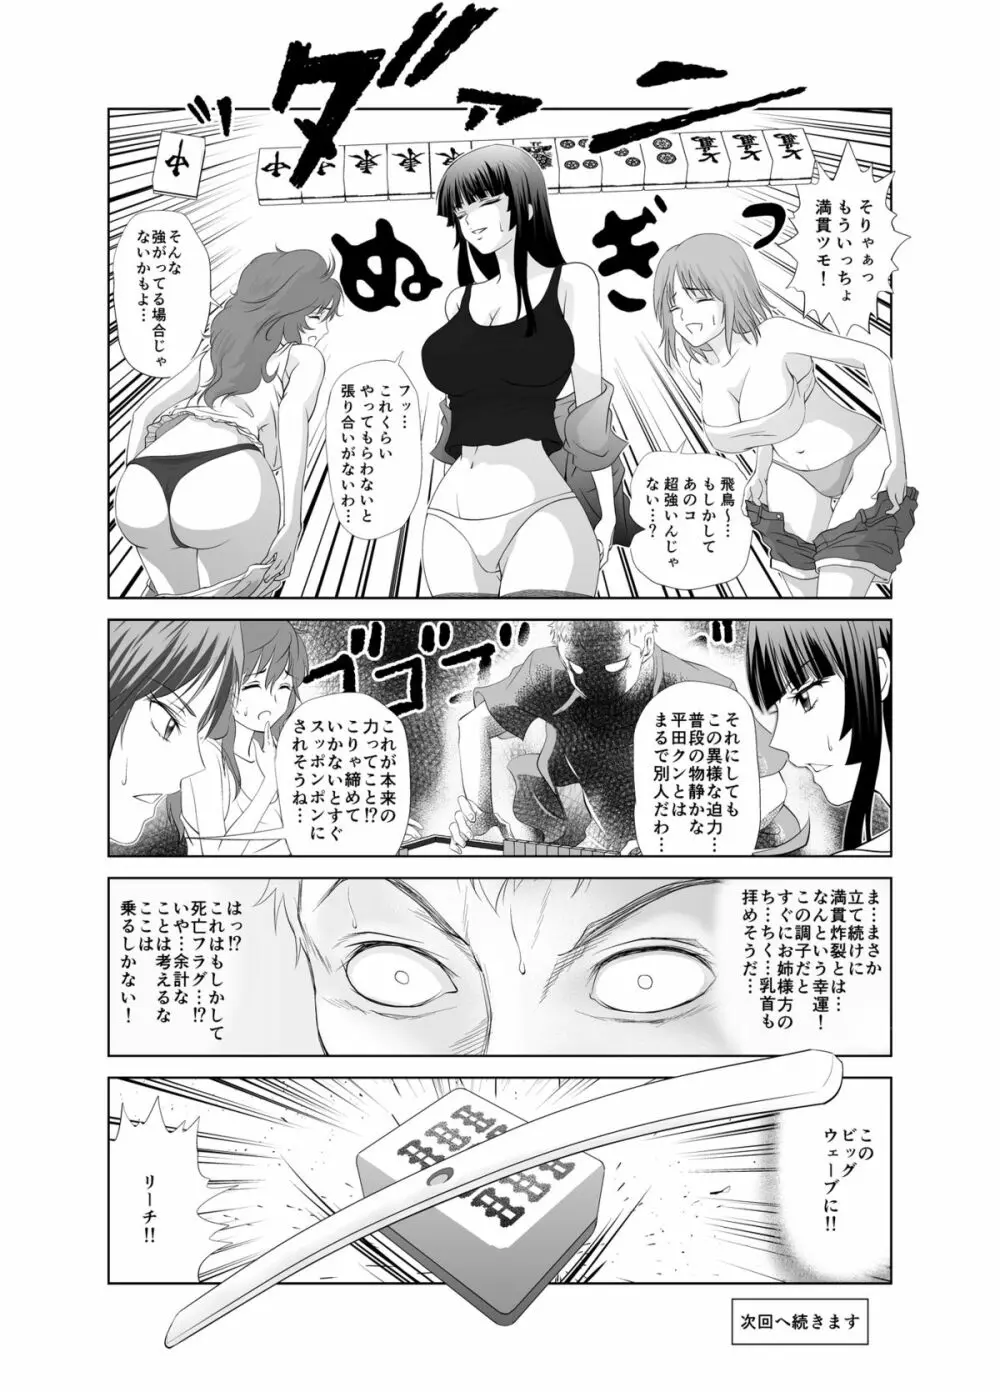 脱衣麻雀～漫画編～【完成版】 16ページ